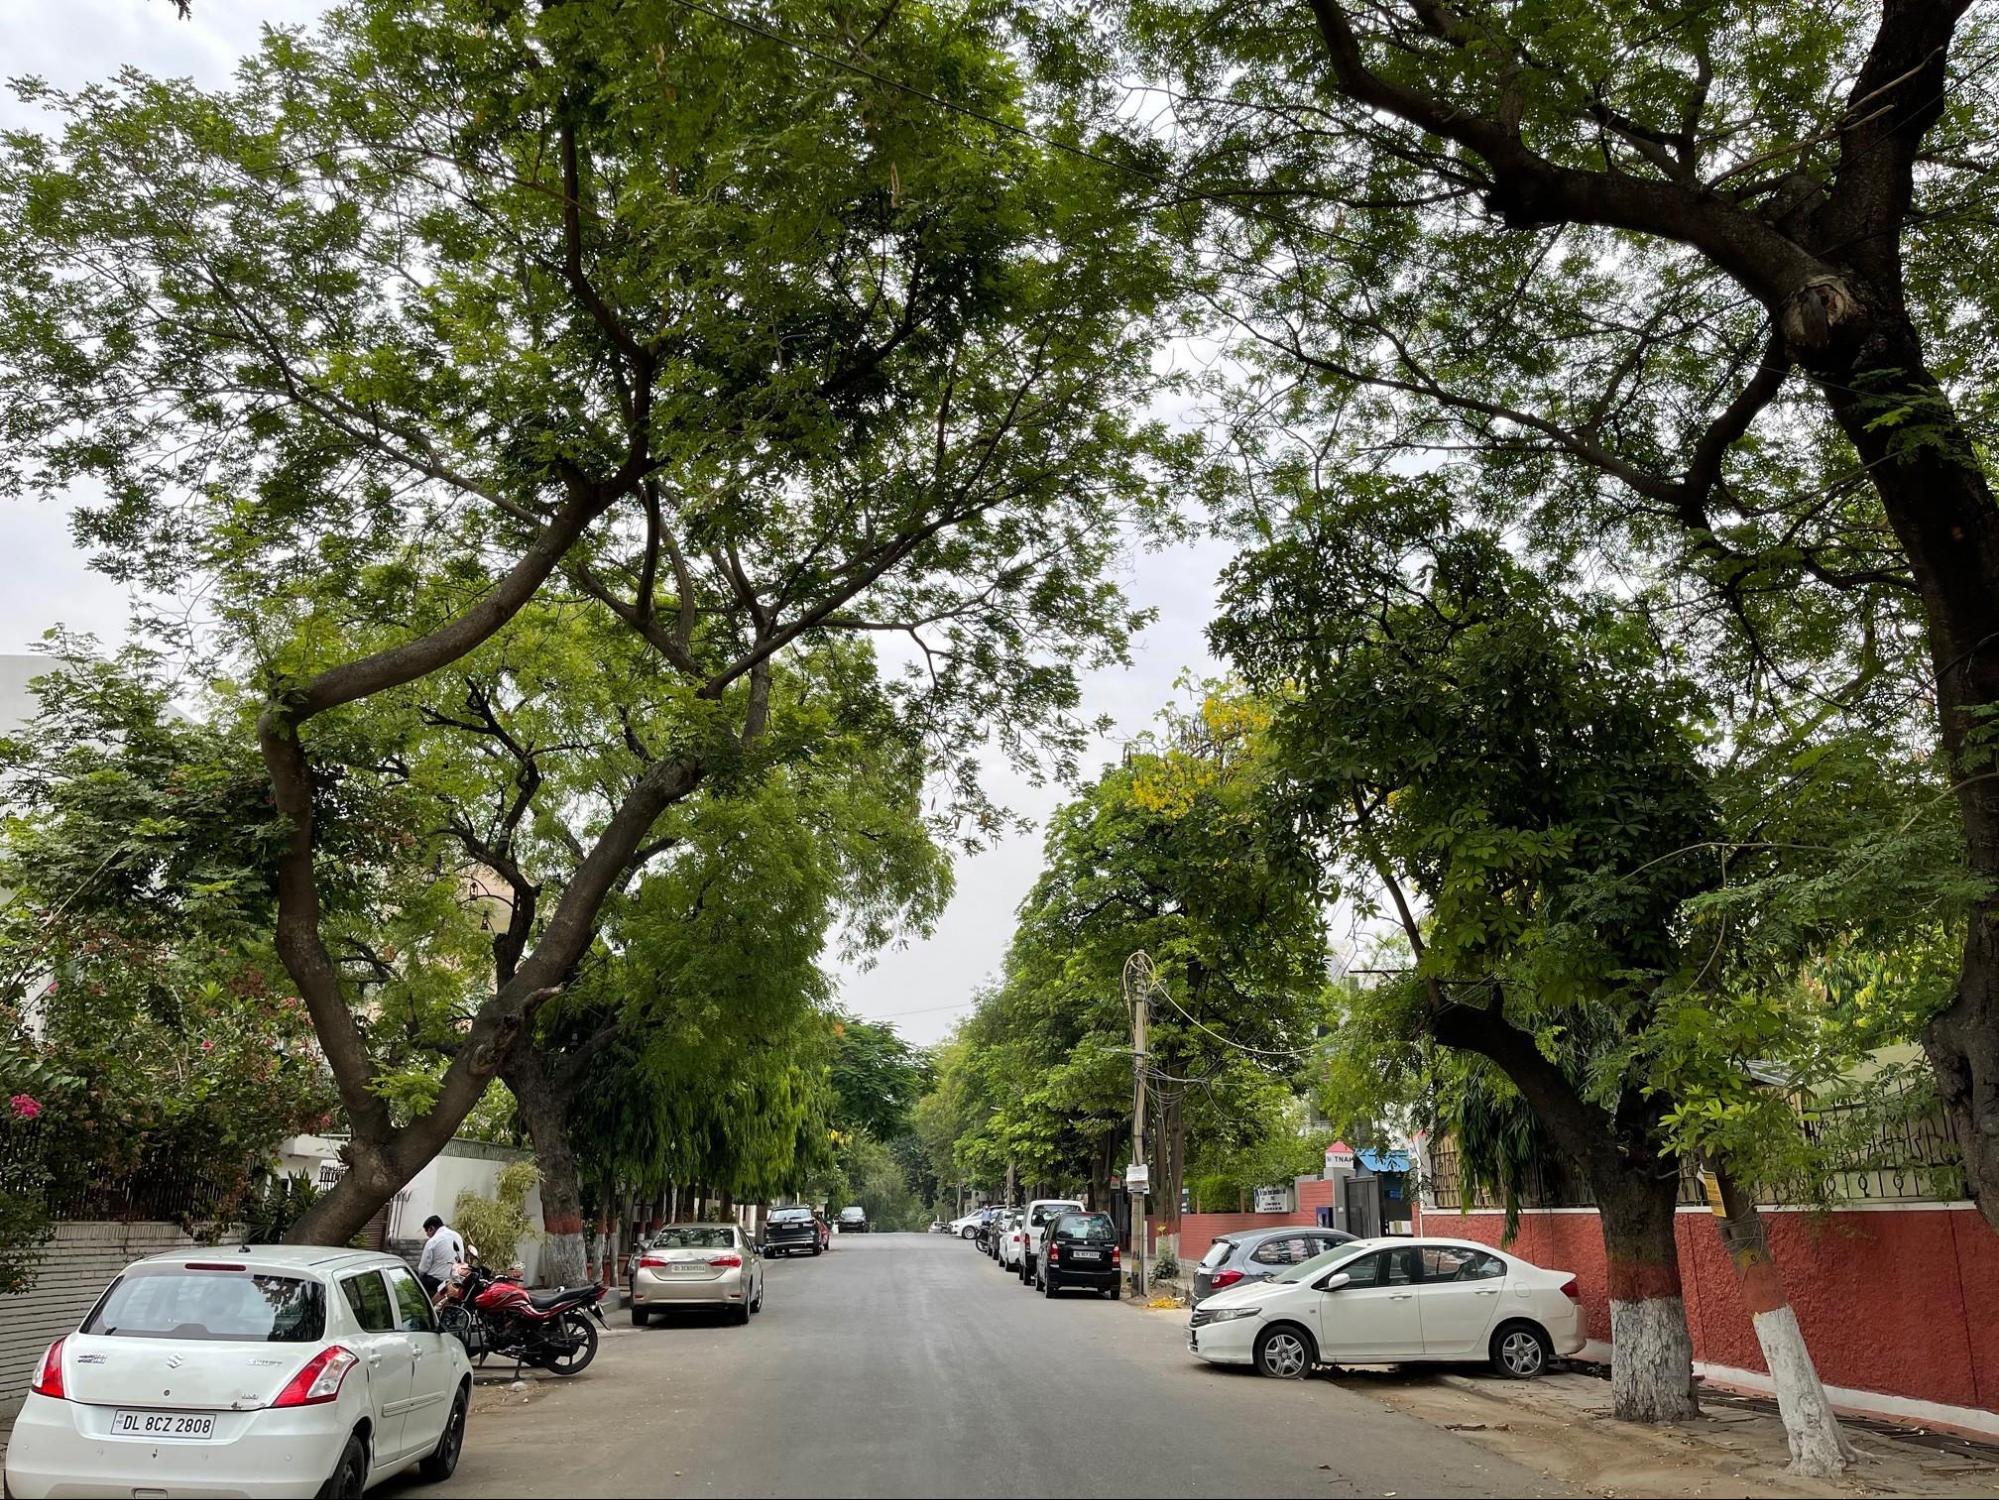 Trees alongside a lane in Green Park, Delhi, Source: Wikimedia Commons